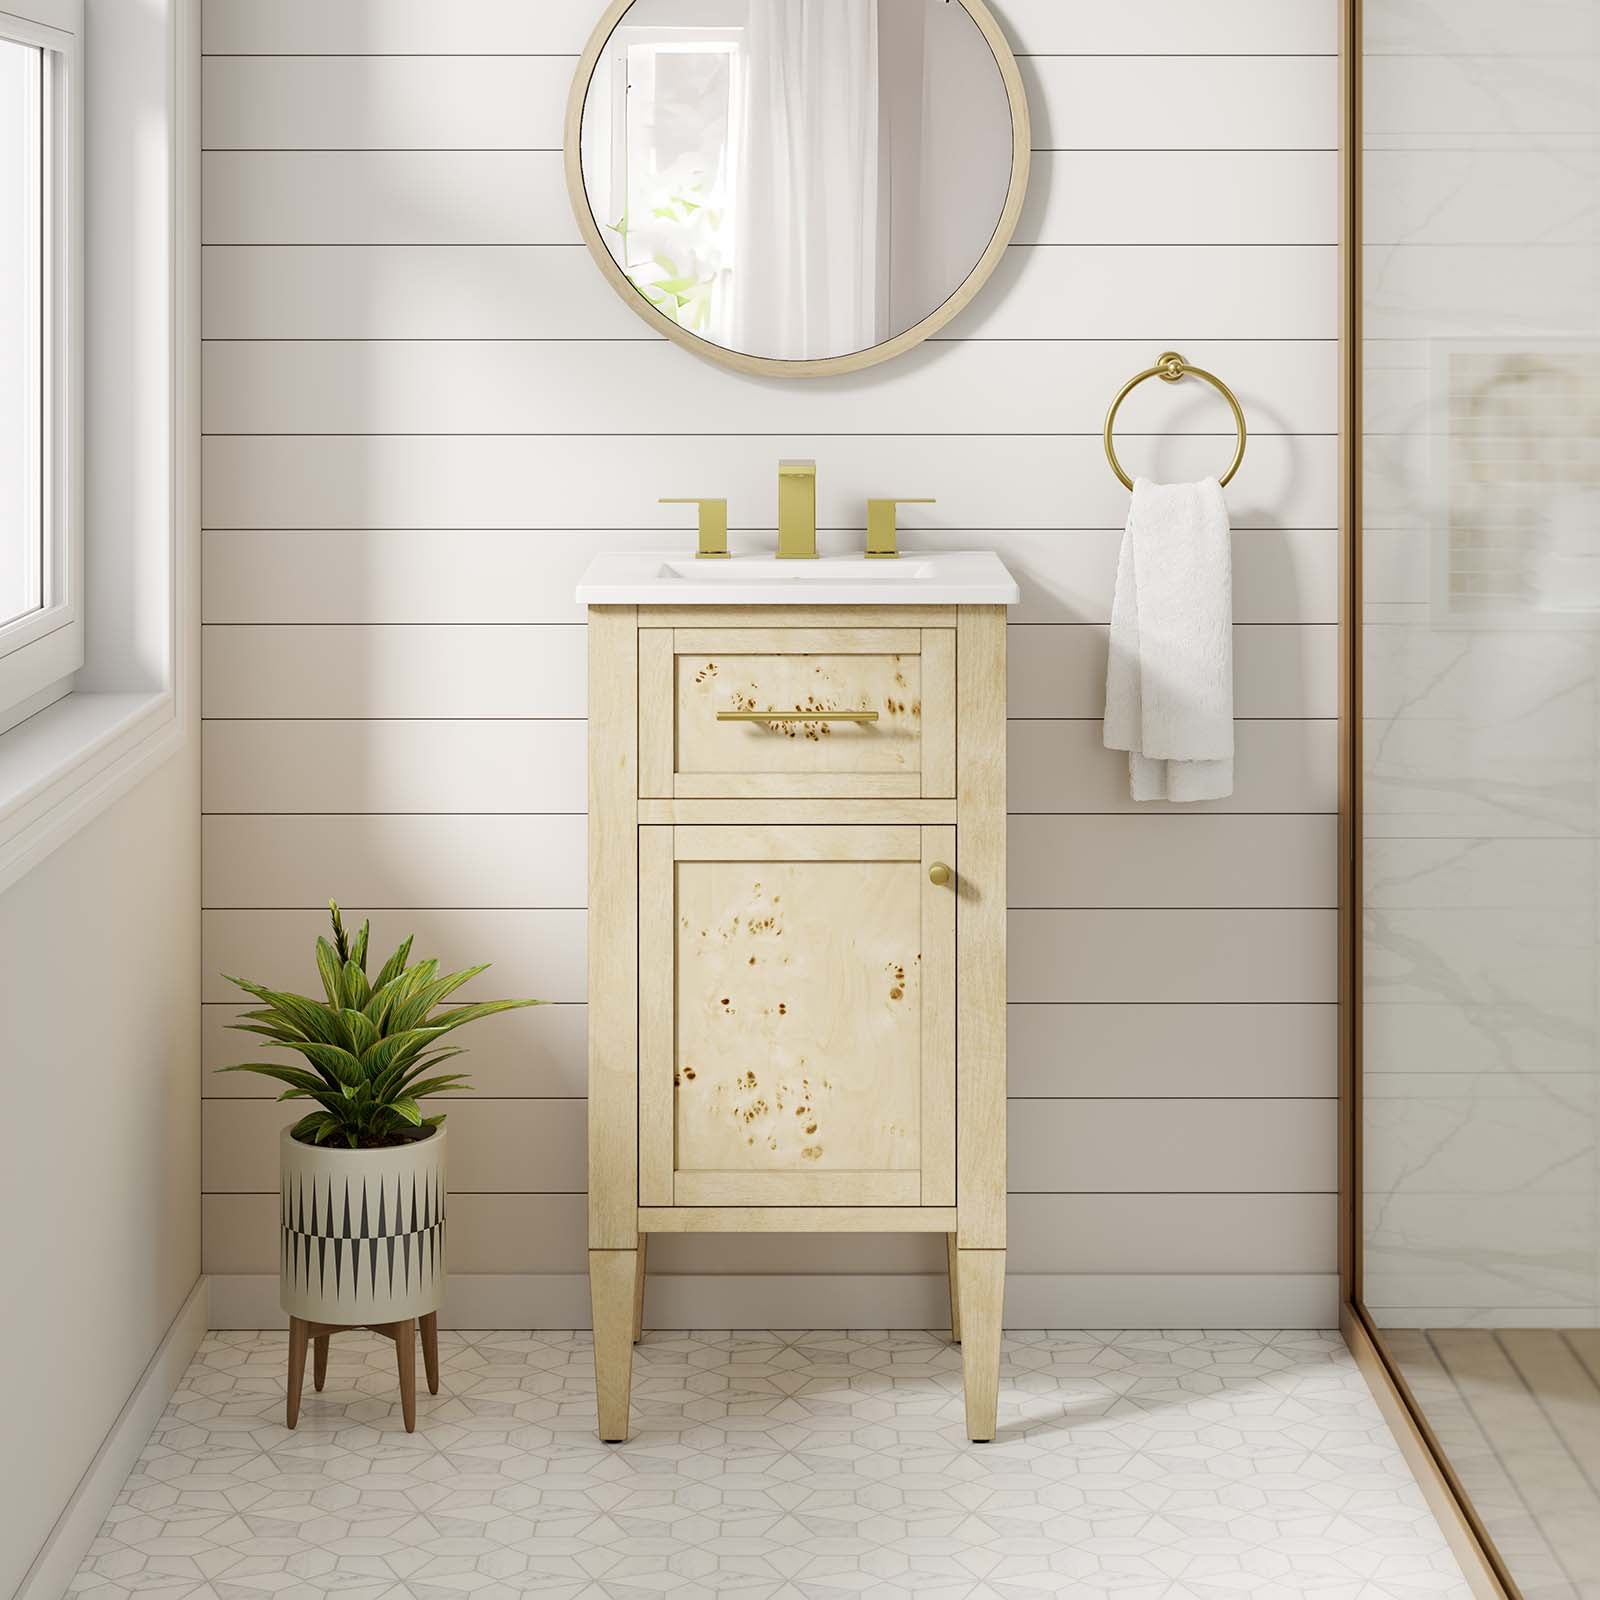 One - Elysian 18" Wood Bathroom Vanity